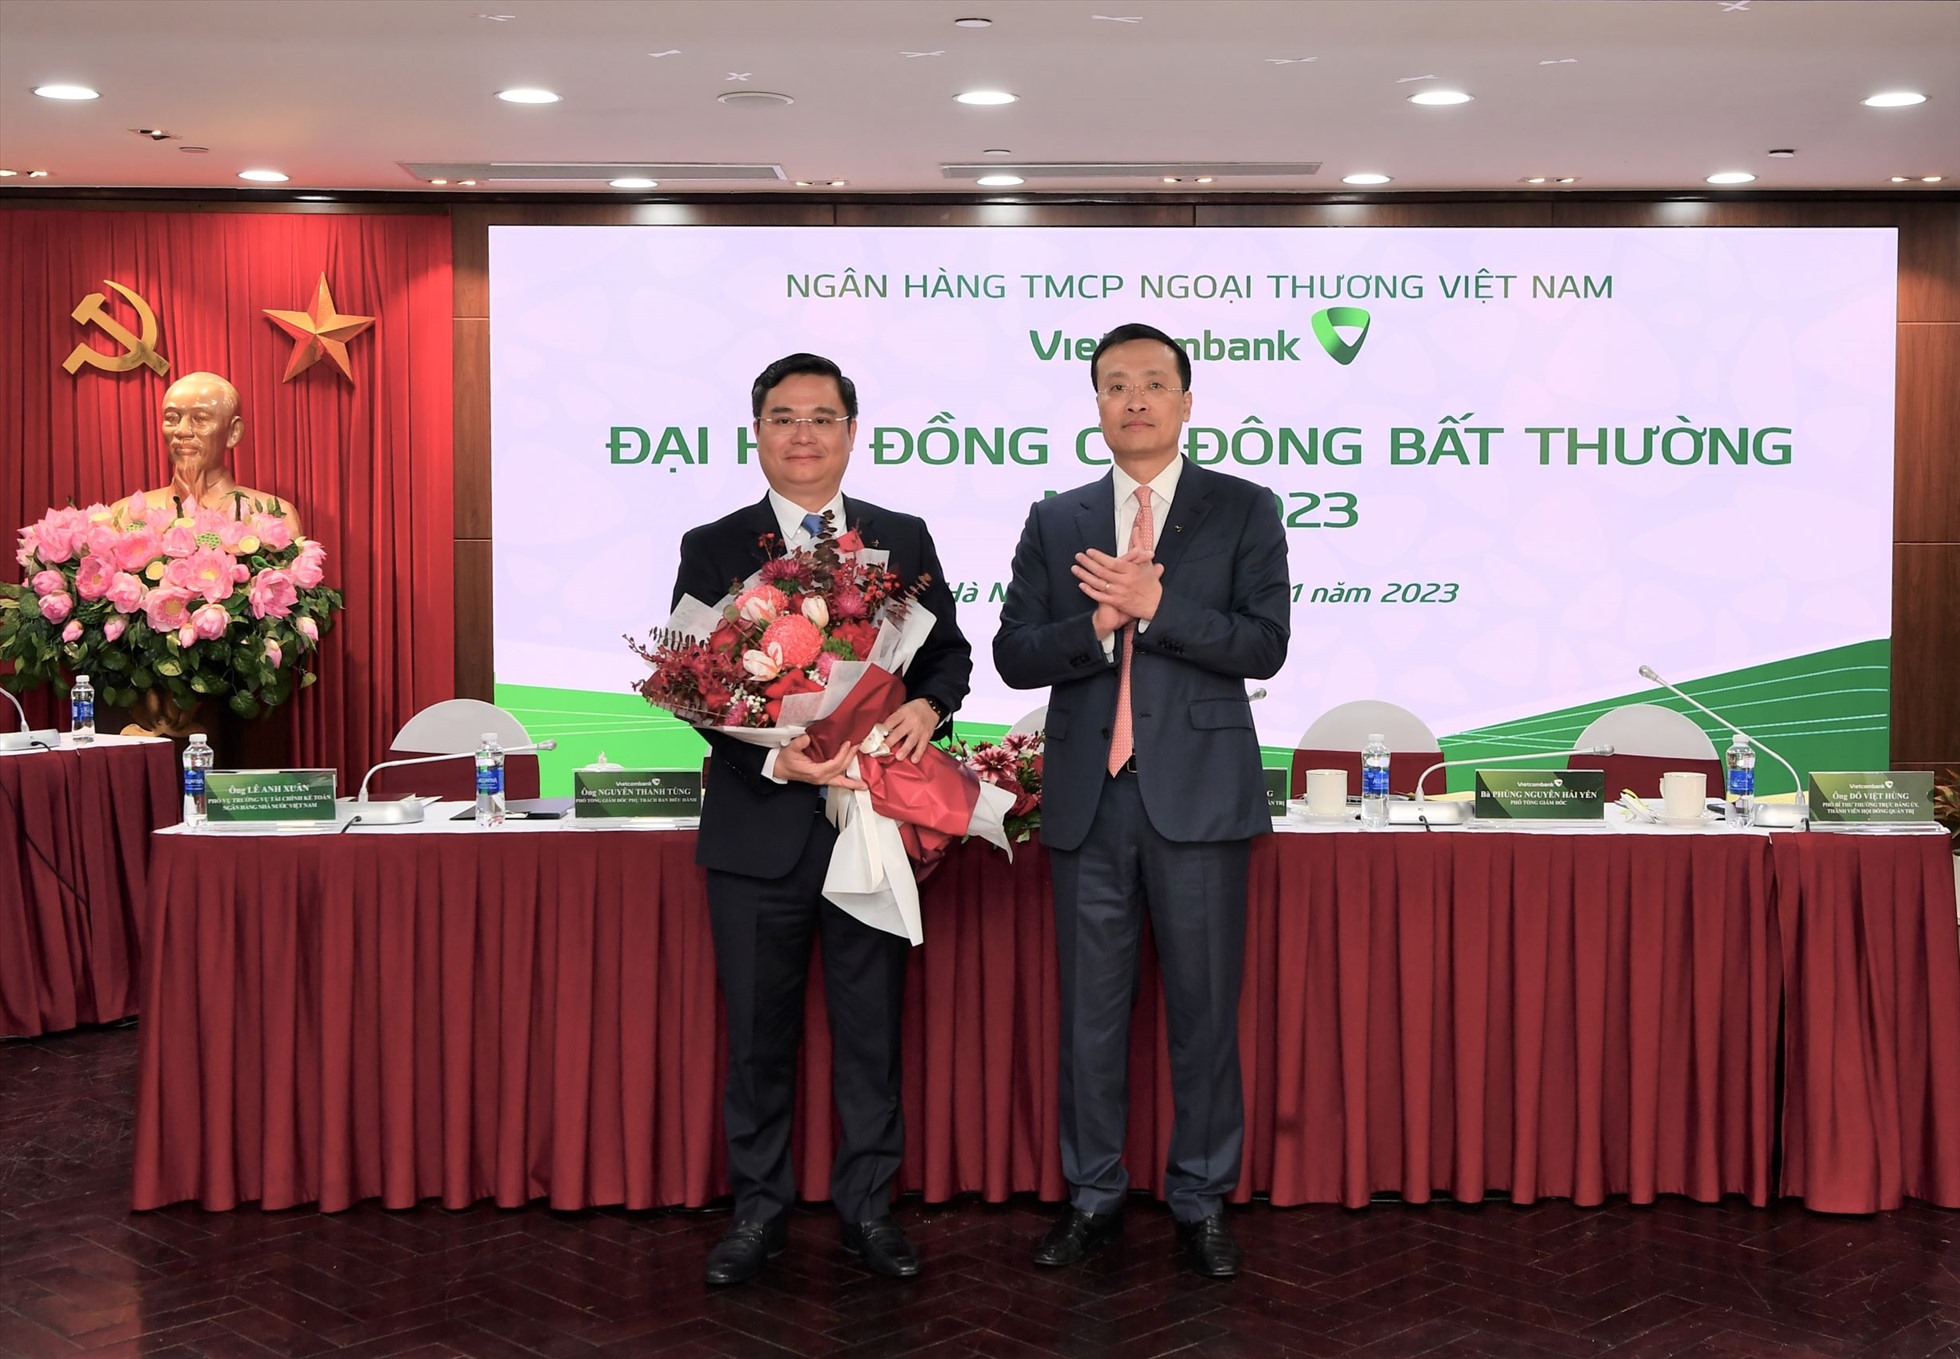 Ông Nguyễn Thanh Tùng - Phó Tổng Giám đốc phụ trách Ban điều hành Vietcombank vào Hội đồng quản trị Vietcombank